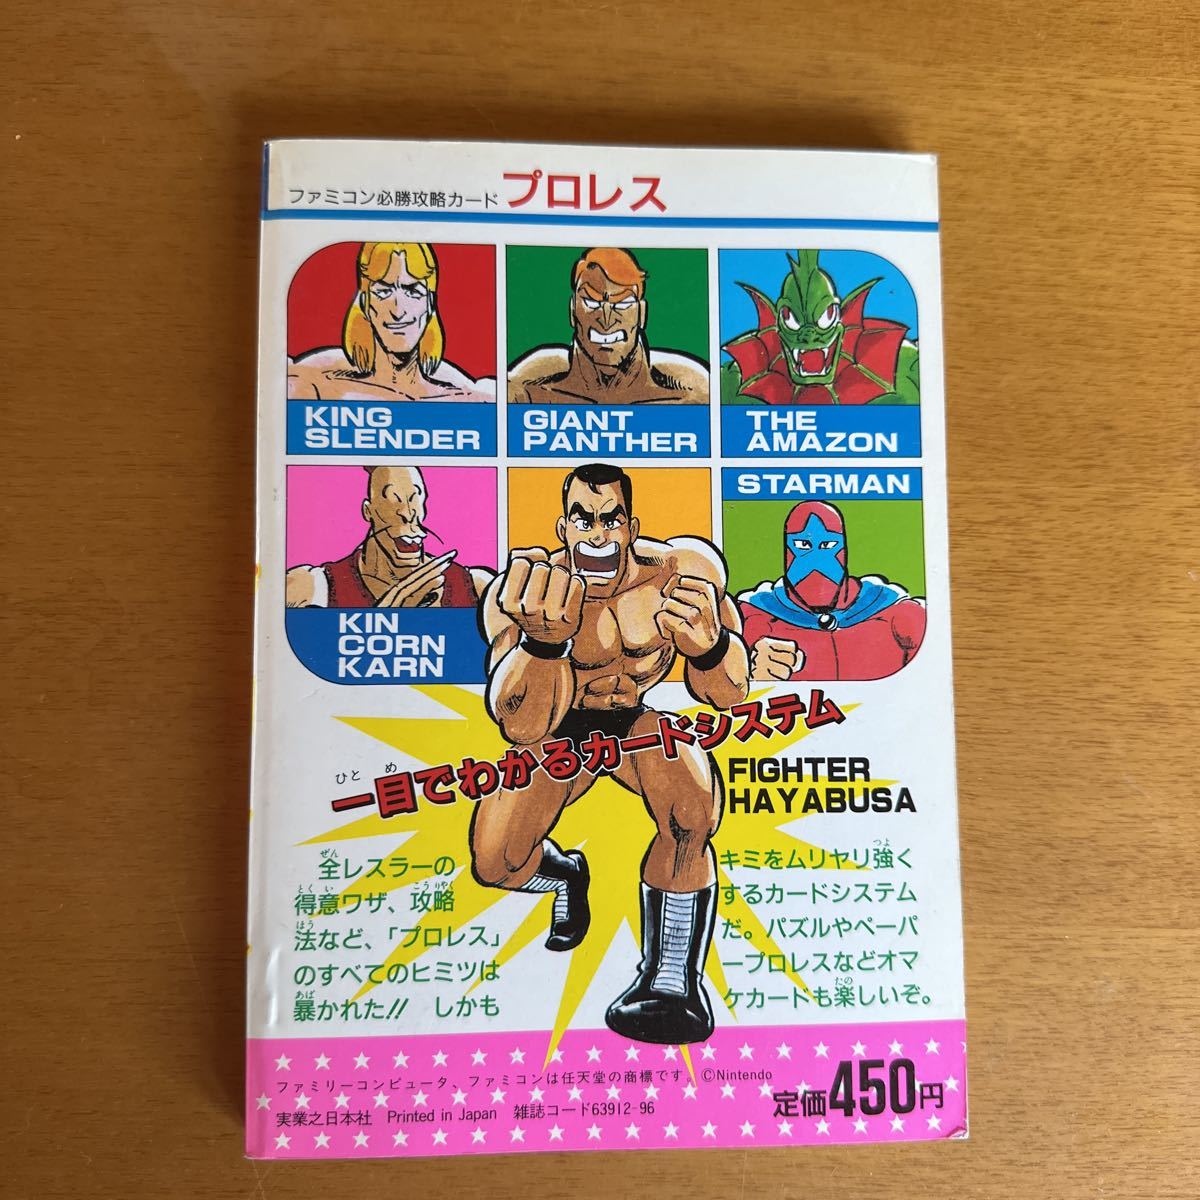  дополнение не использовался Famicom обязательно ... карта Professional Wrestling Showa Retro 